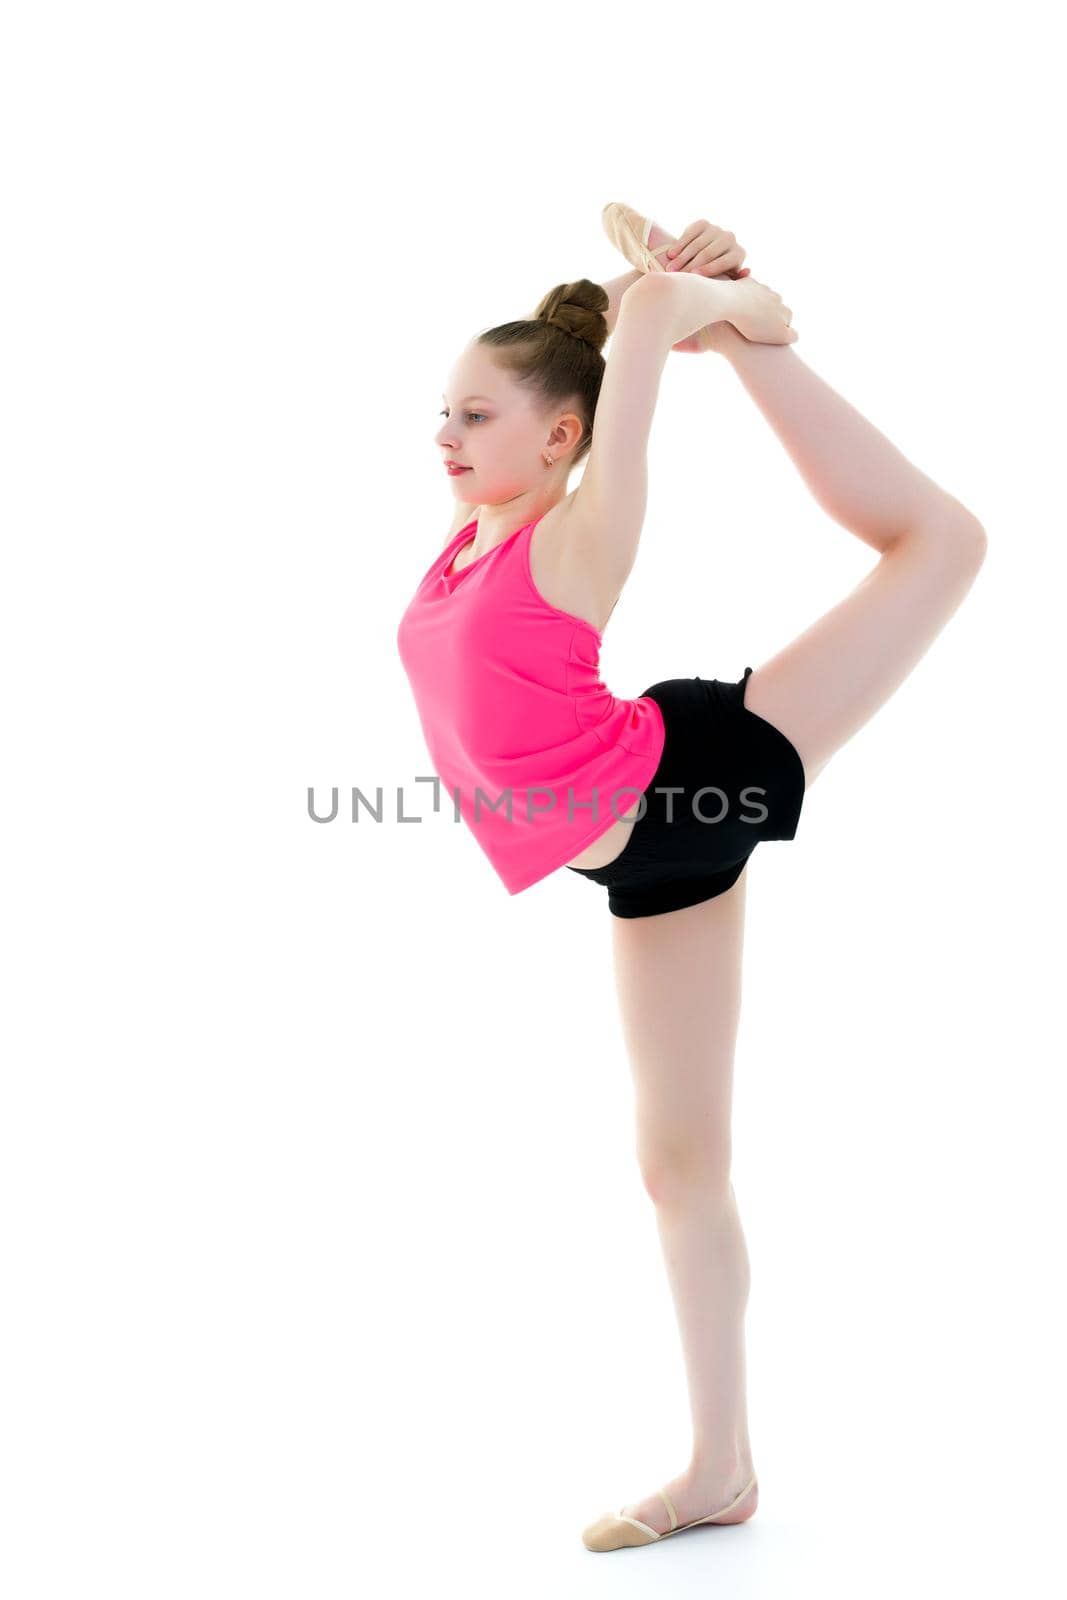 The gymnast balances on one leg. by kolesnikov_studio